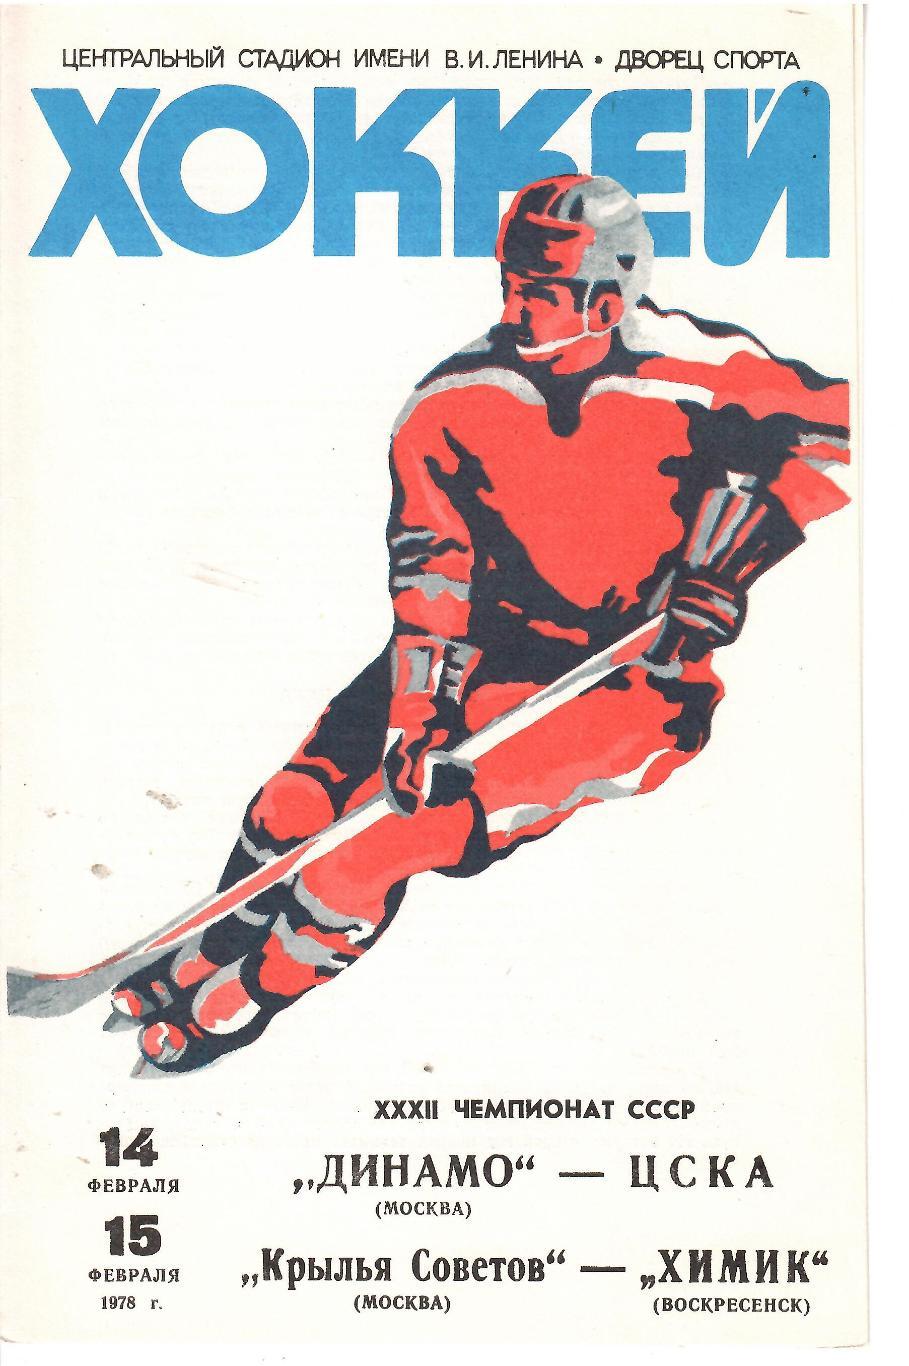 1978 Хоккей Динамо Москва - ЦСКА - Крылья Советов - Химик